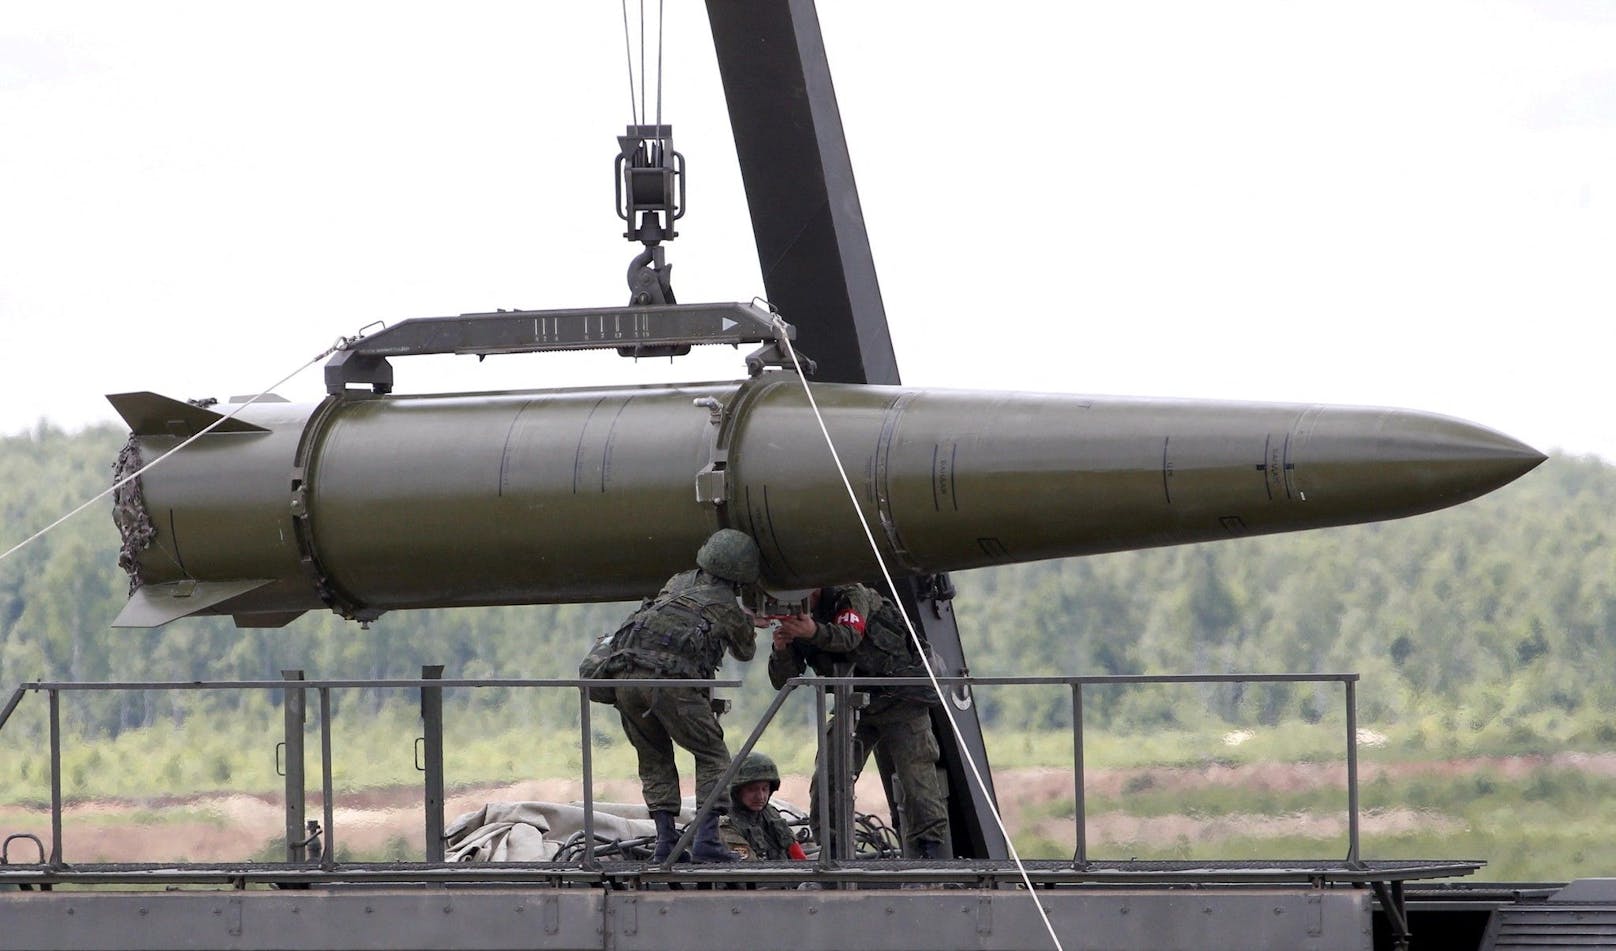 Russland hat nach ukrainischen Angaben taktische Iskander-Kurzstreckenraketen nach Belgorod nahe der ukrainischen Grenze verlegt. Die Raketen können mit nuklearen Sprengköpfen ausgestattet werden und haben eine Reichweite von rund 500 Kilometern.